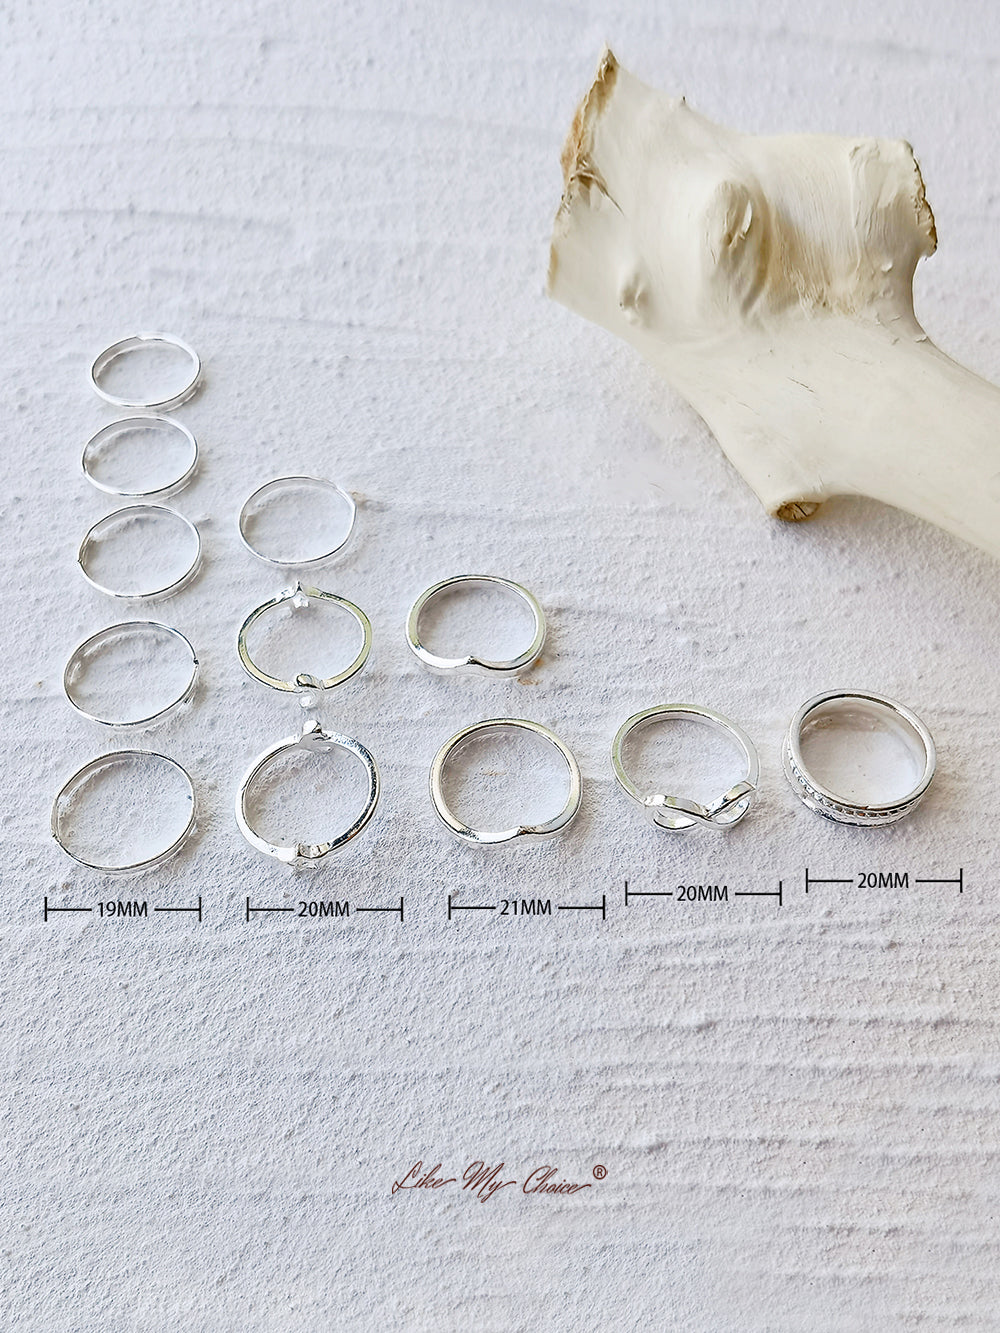 مجموعة حلقات هندسية على شكل نجمة وقمر بوهو مكونة من 12 قطعة